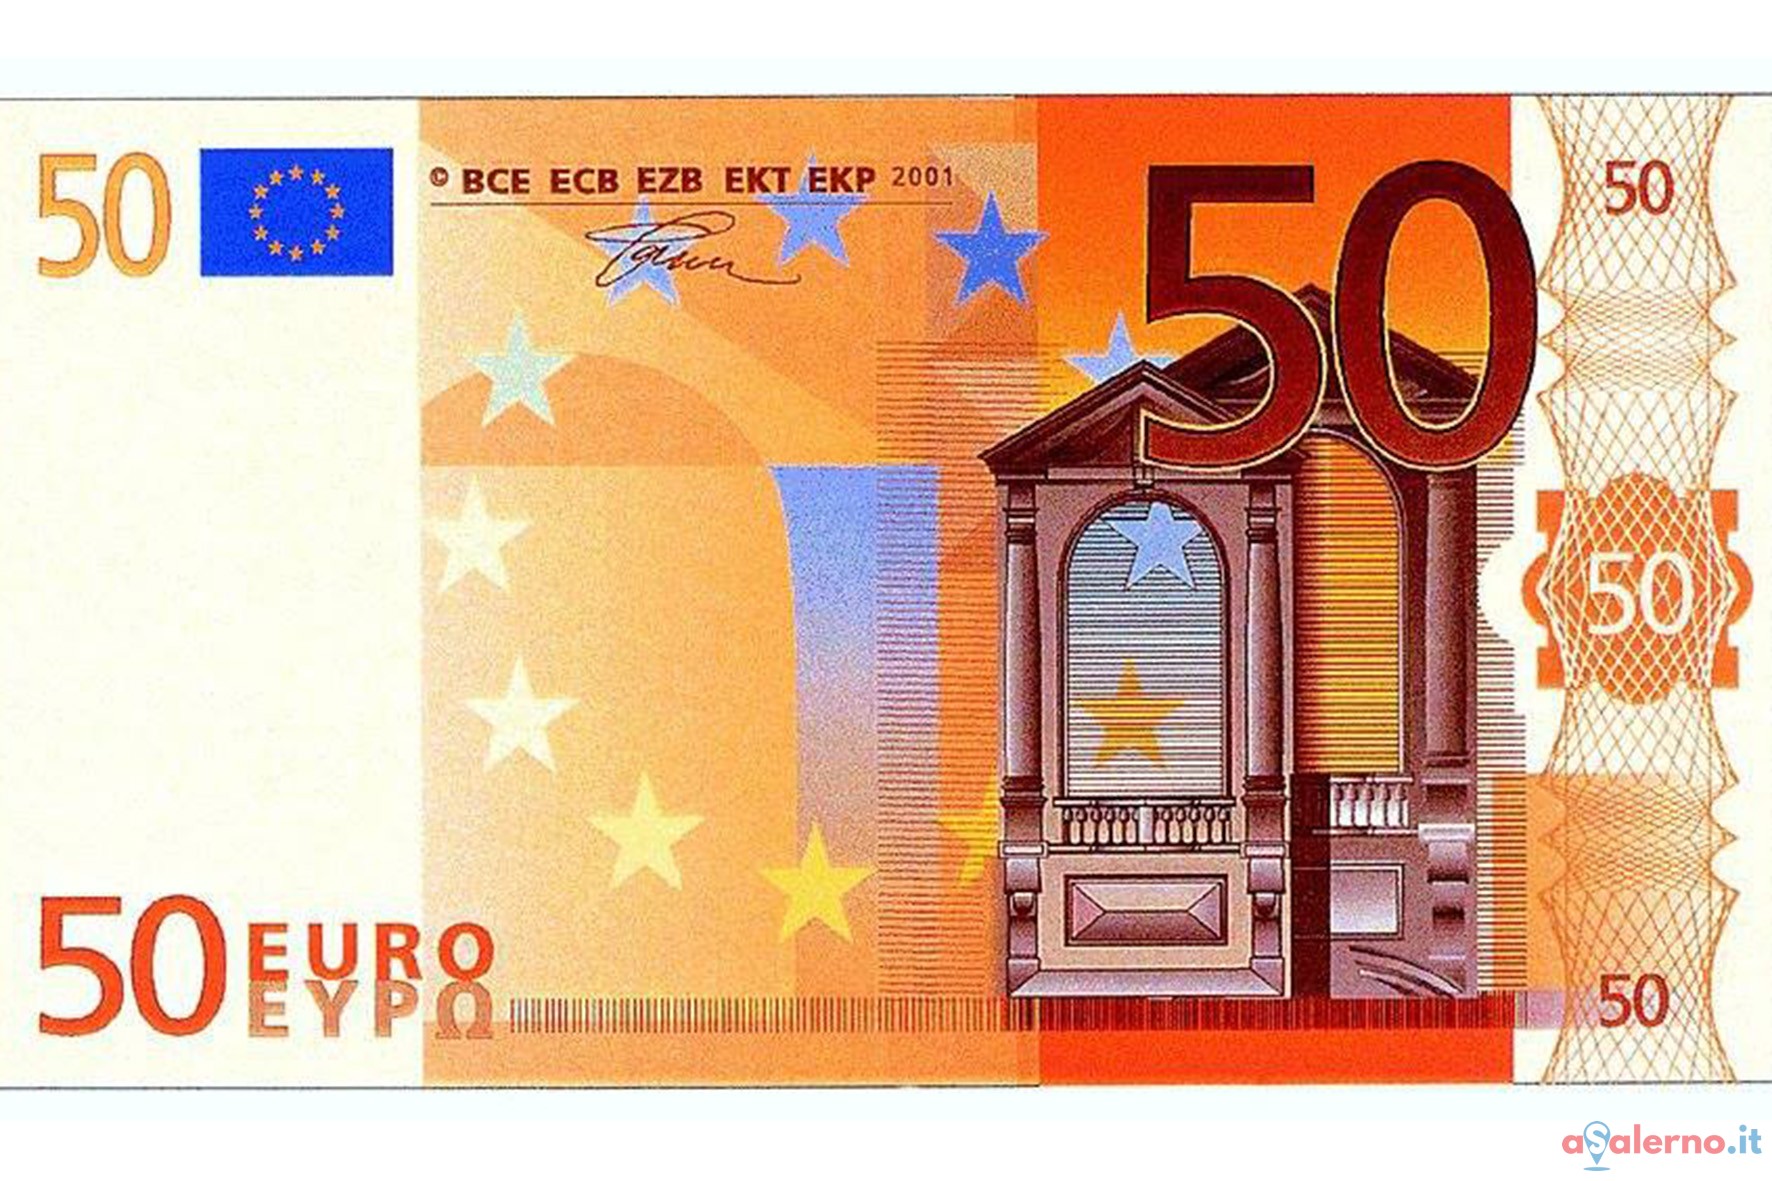 Soldi falsi in circolazione a Cesenatico: occhio alle nuove banconote da 50 euro